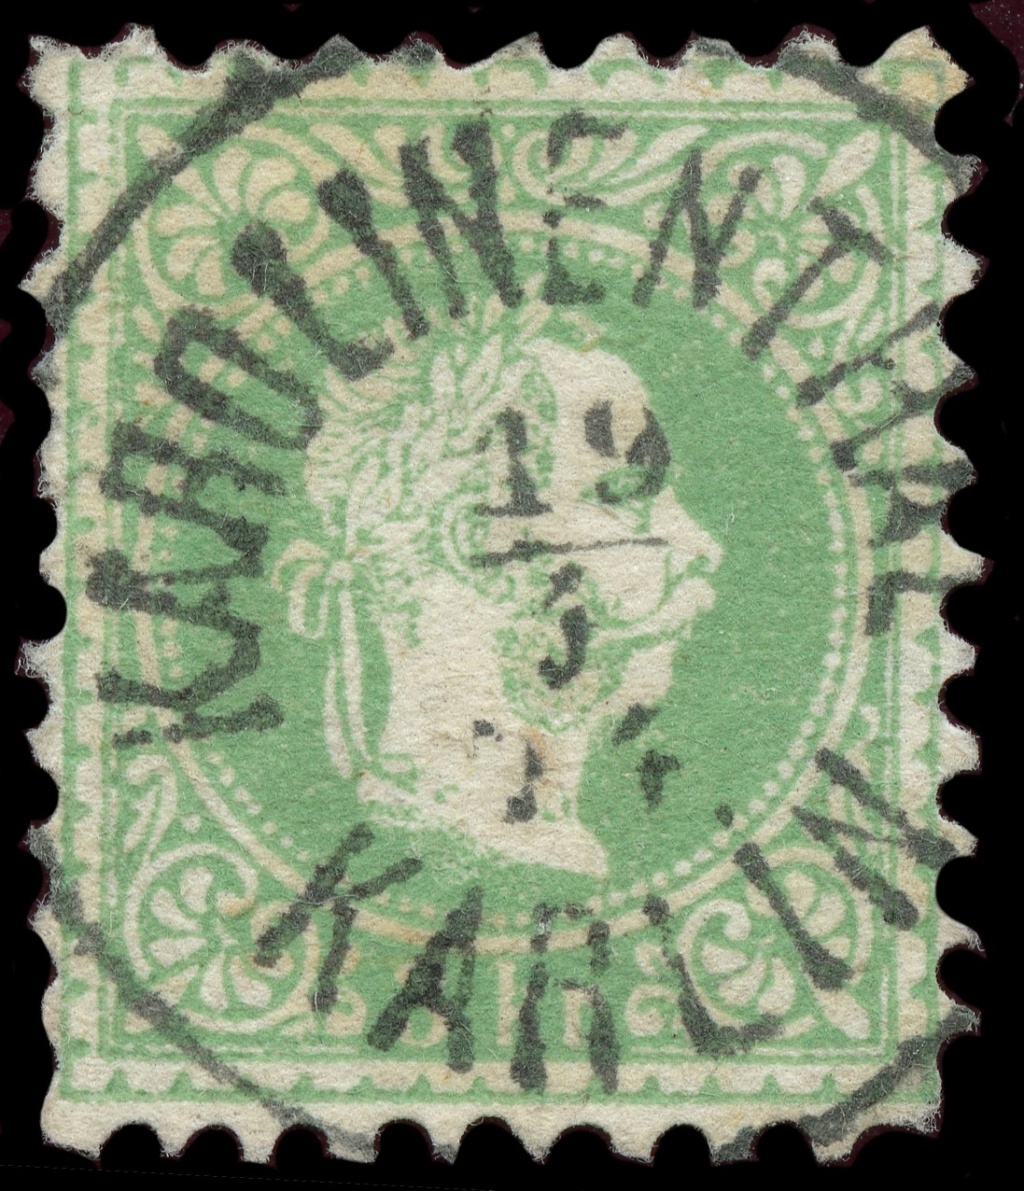 Osterreich - Freimarken-Ausgabe 1867 : Kopfbildnis Kaiser Franz Joseph I - Seite 23 Ank_3628